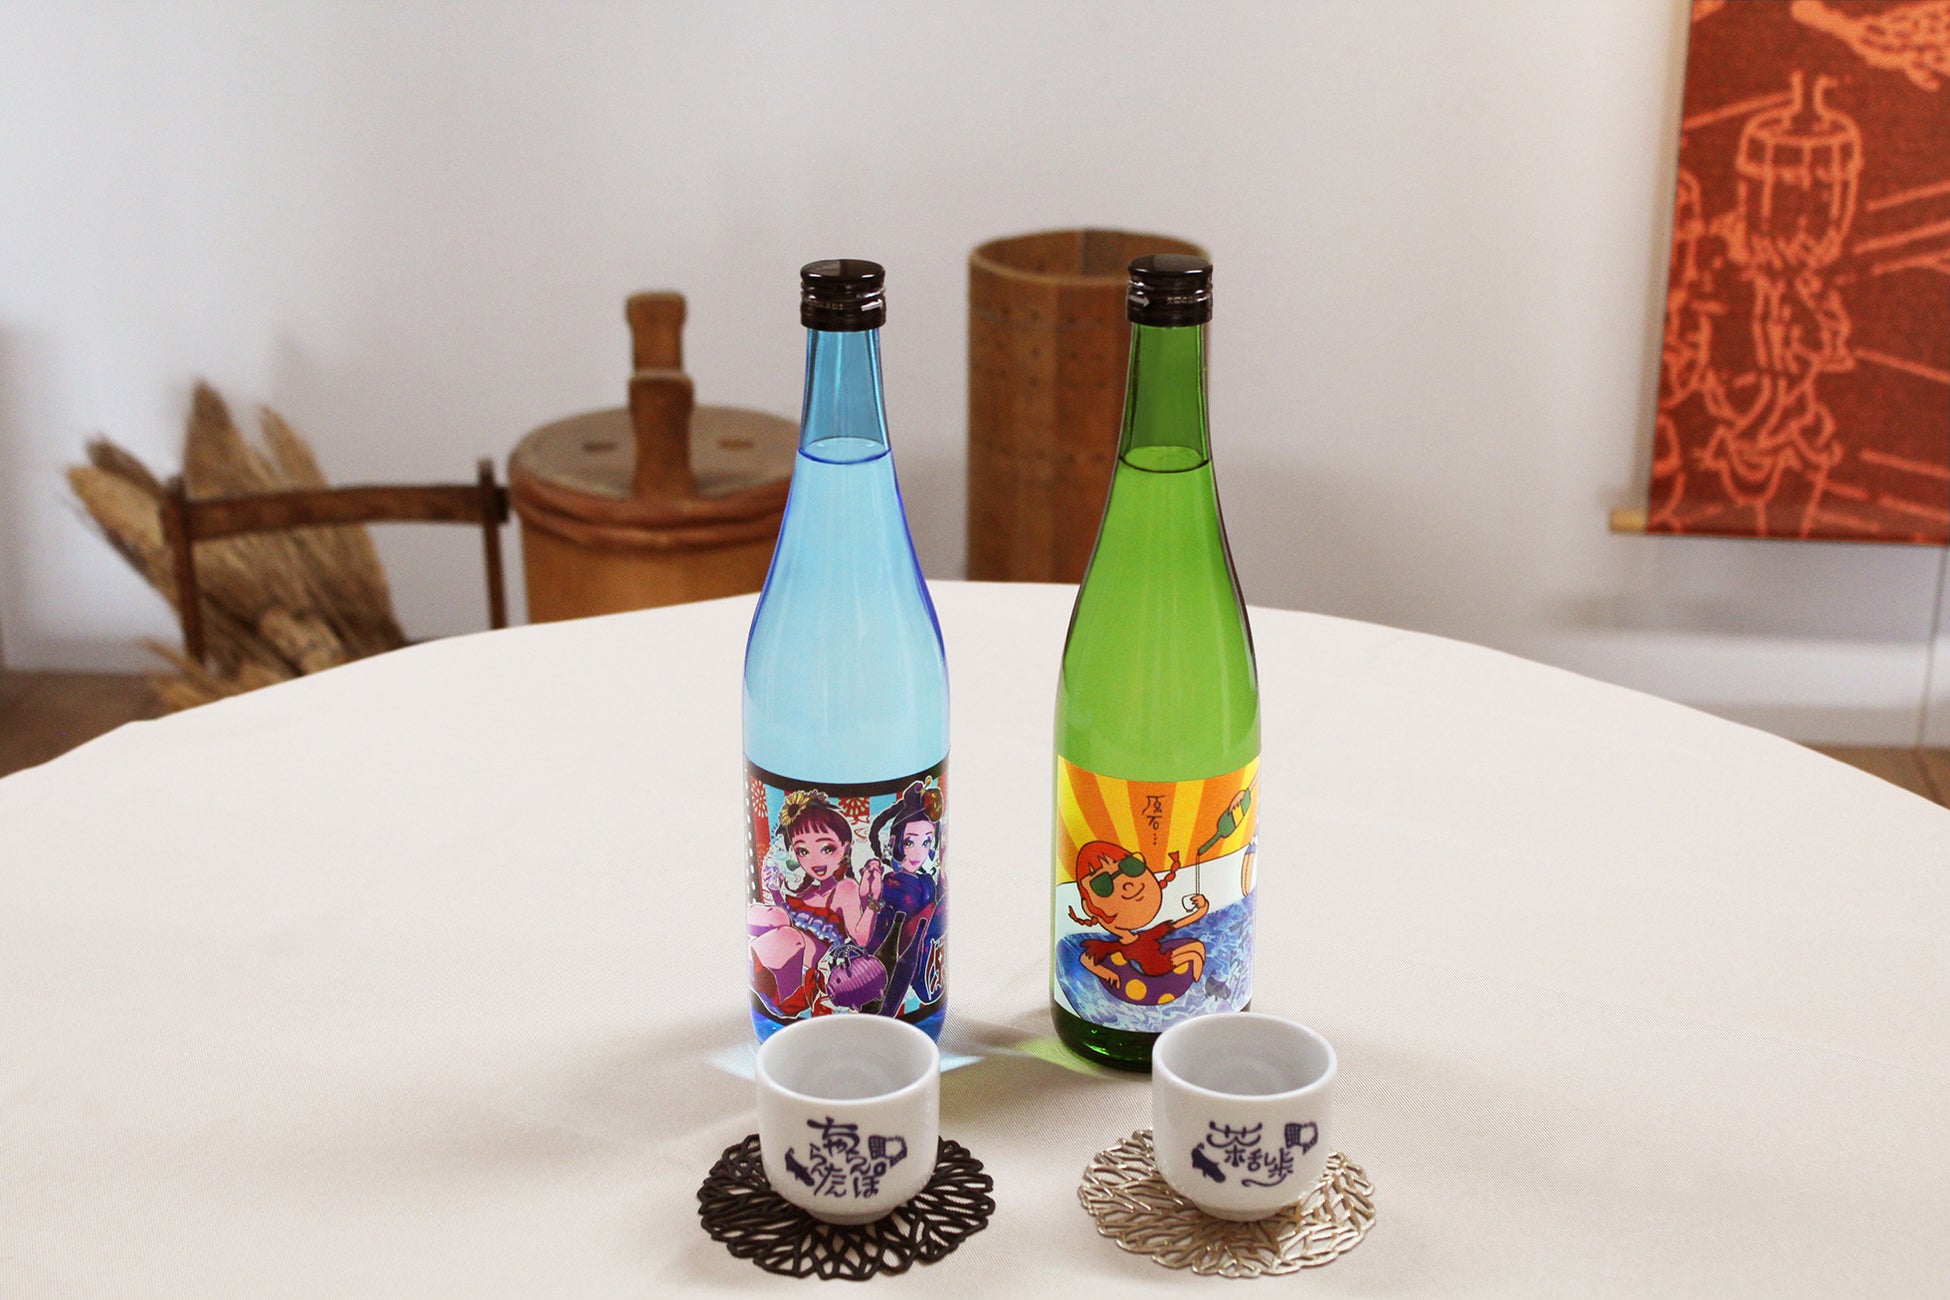 「逃げ恥」OP を手掛けた『チャラン・ポ・ランタン』、江戸時代から続く酒蔵『明利酒類』と『GENSEKI』の3者コラボによるクリエイター応援イラストコンテストから誕生したラベルデザインの夏酒が発売！のサブ画像3